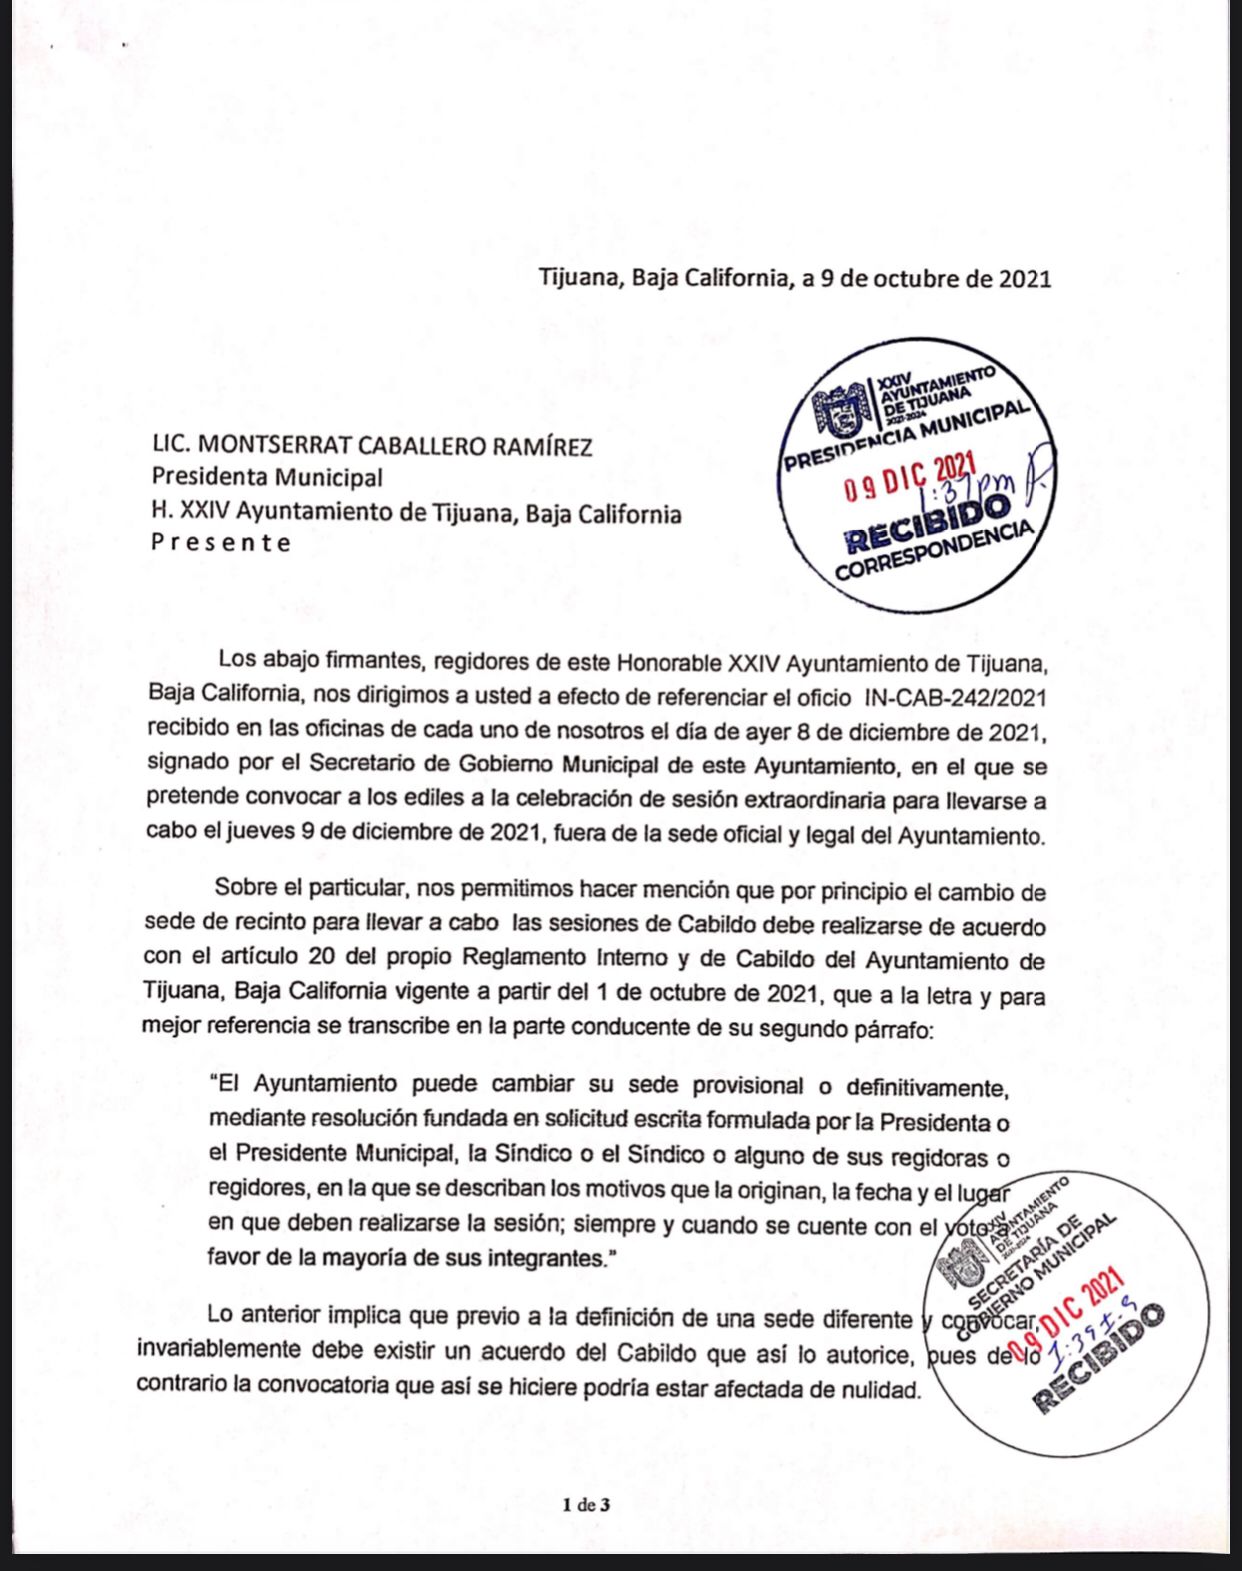 Ilegal cambio de sede de la Sesión de Cabildo sin previo acuerdo: Regidores